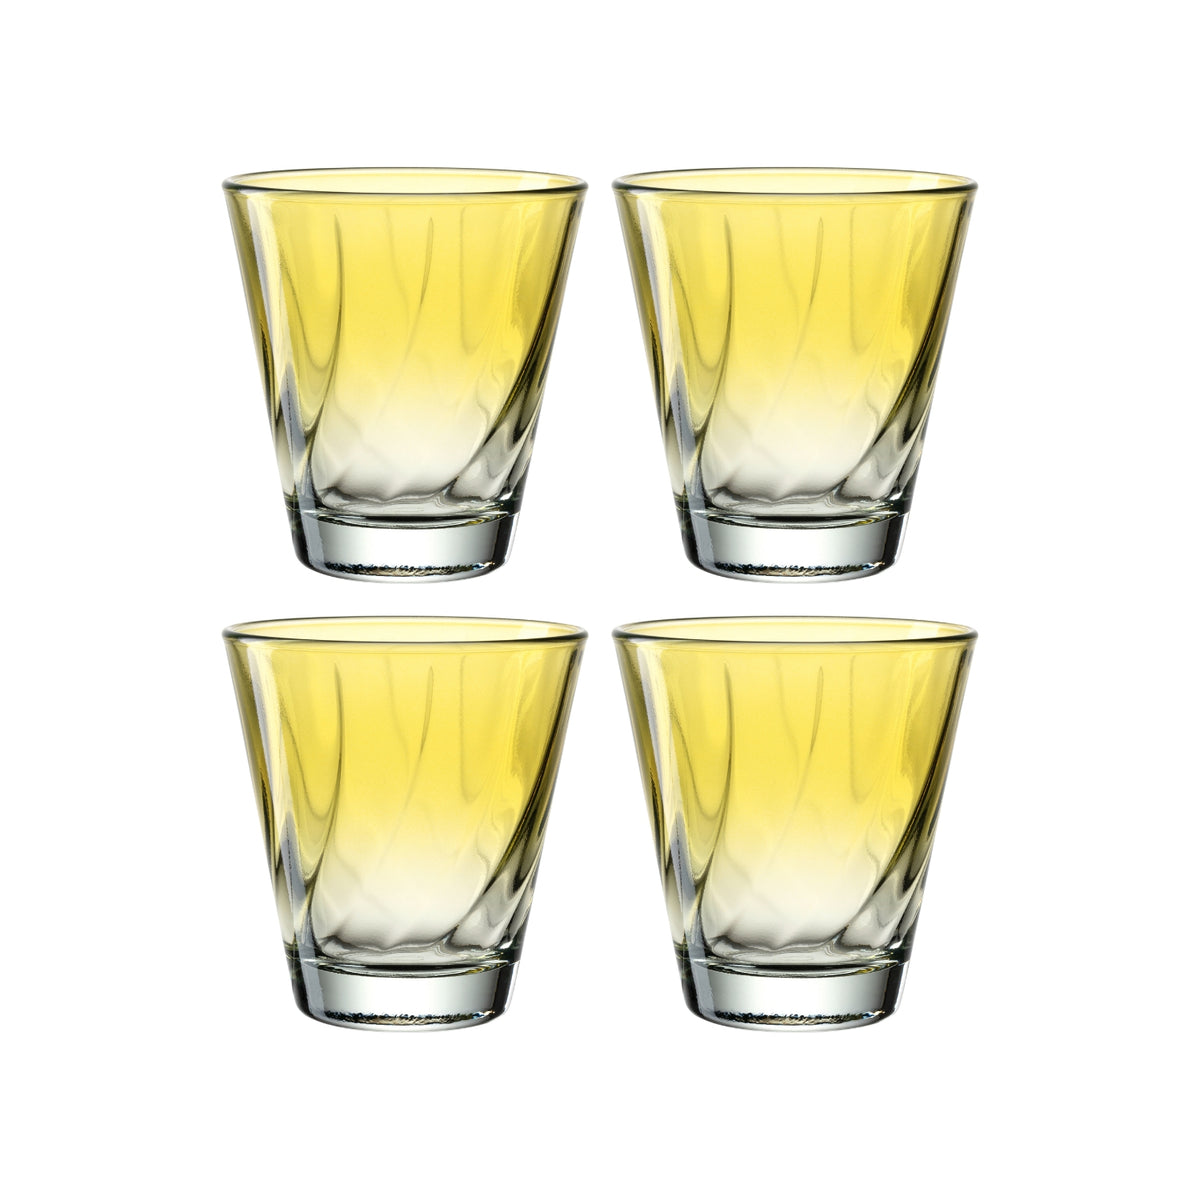 Trinkglas 215ml gelb TWIST 4er-Set